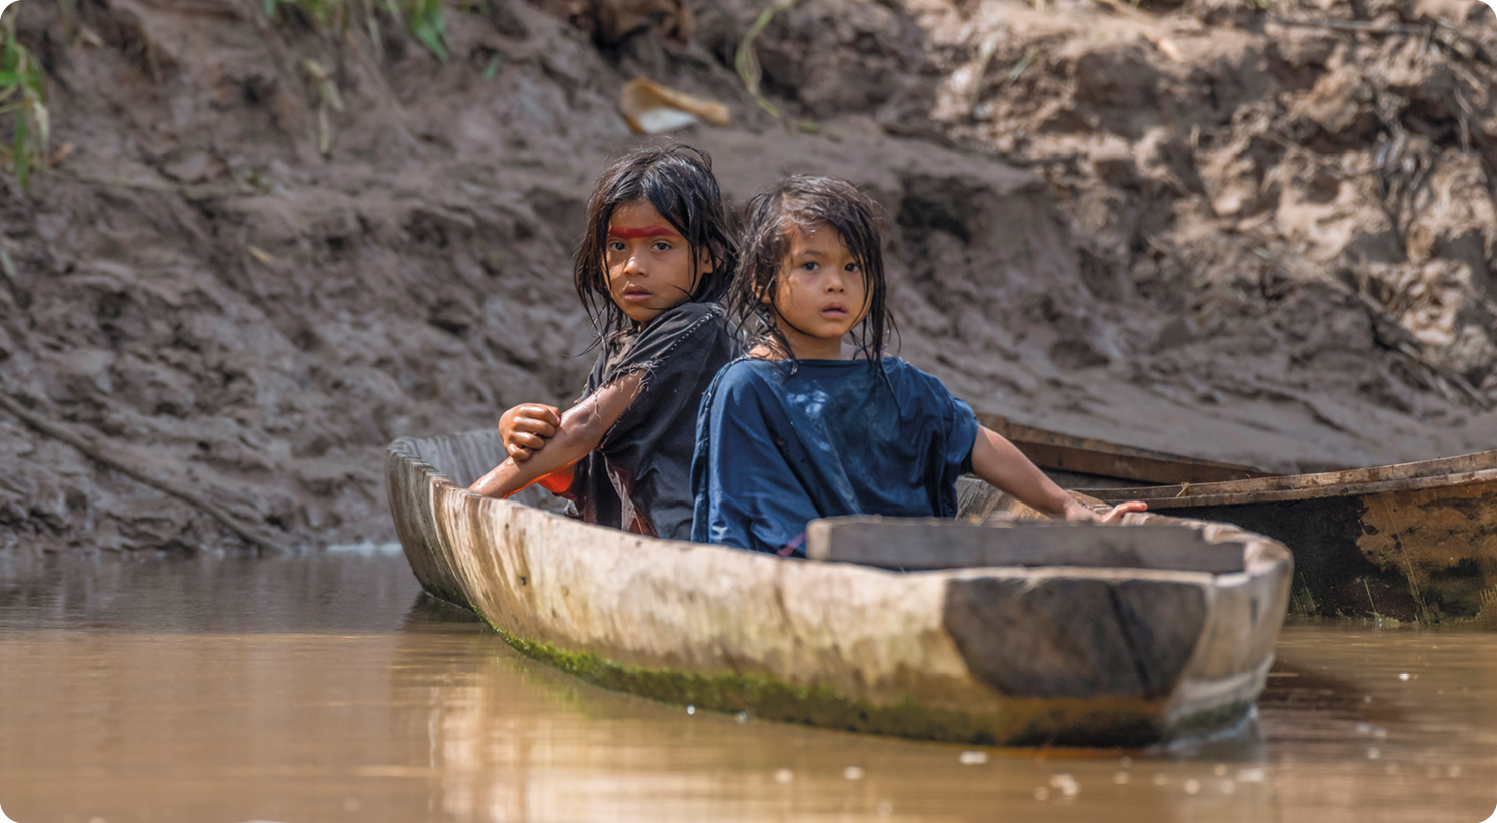 Fotografia. Duas crianças indígenas, usando camiseta, estão dentro de uma pequena embarcação de madeira sobre um corpo de água.